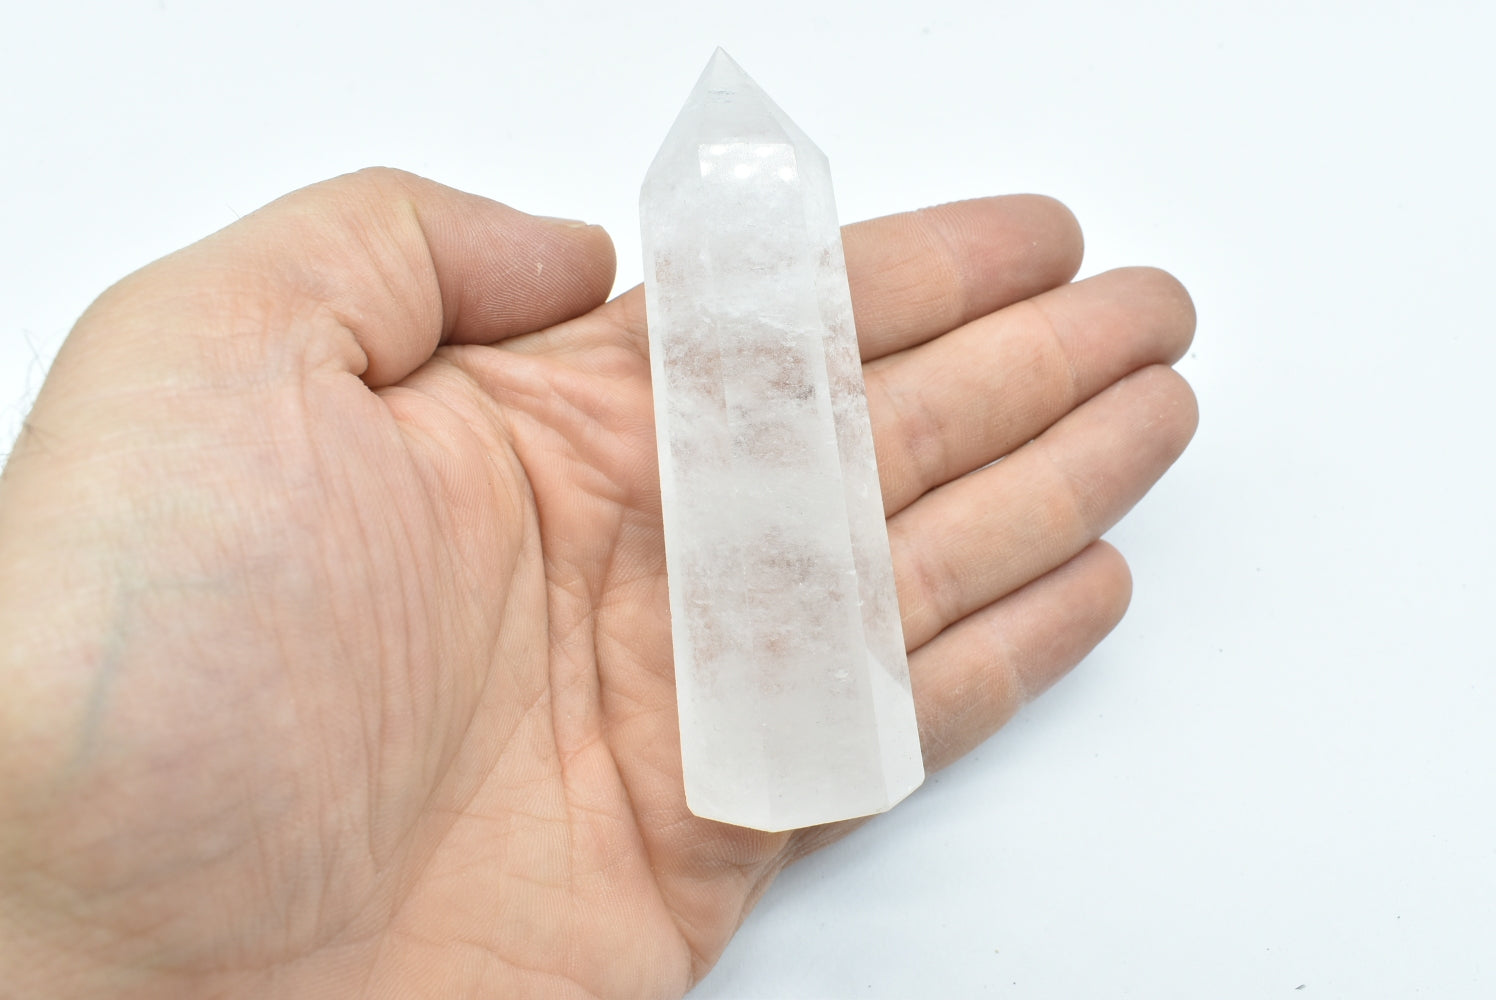 Tip of Polished Rock Crystal - Hyaline Quartz